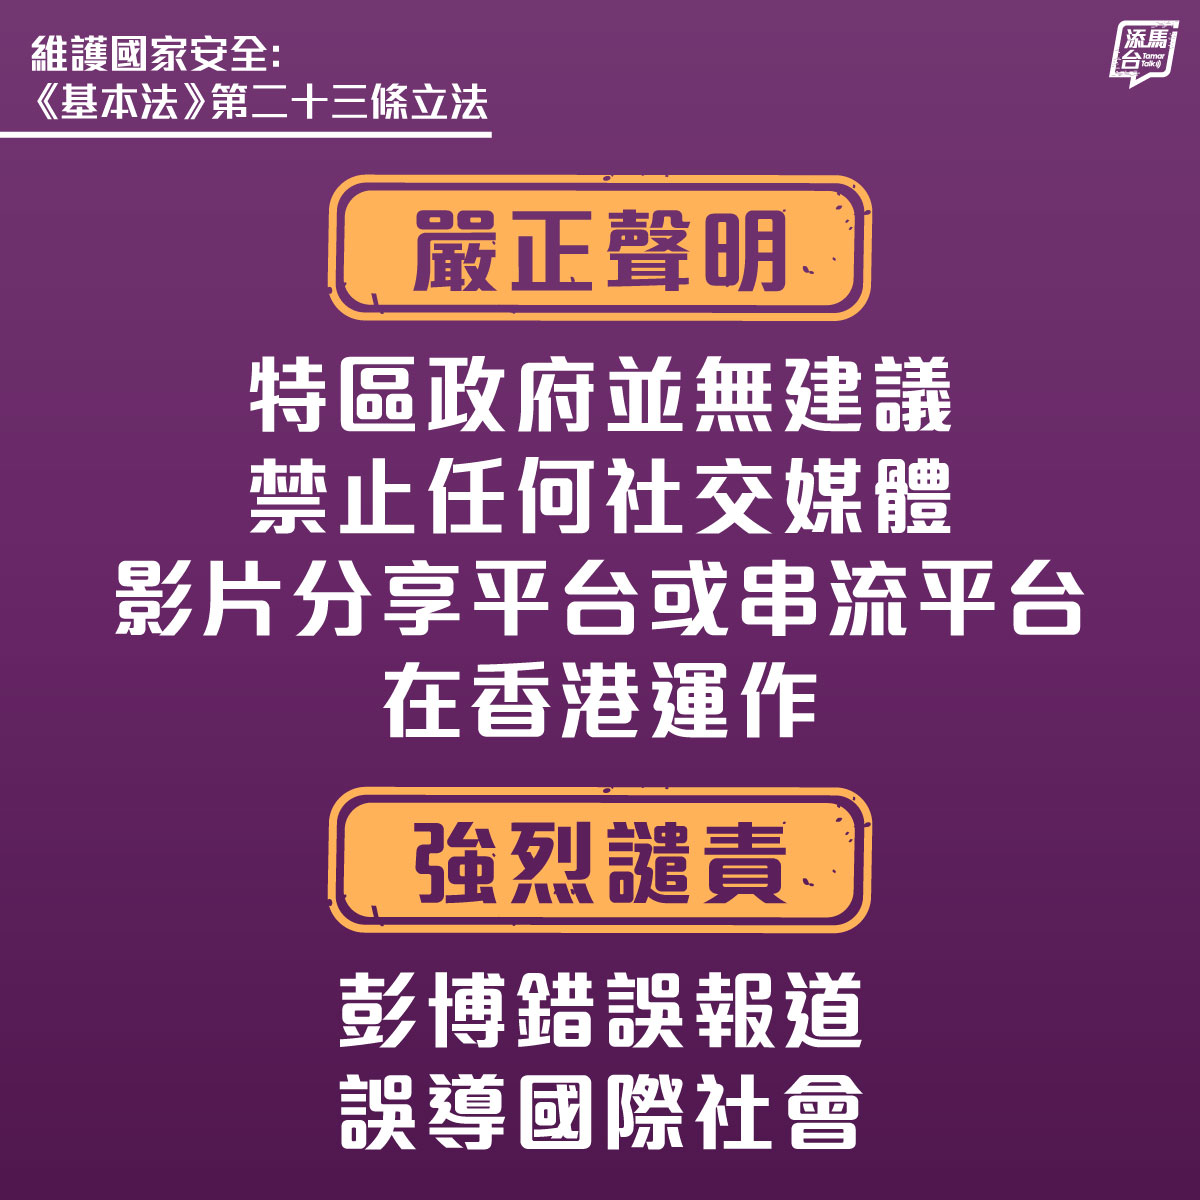 【强烈不满和谴责彭博错误报道】特区政府严正声明，并无建议禁止任何社交媒体、影片分享平台或串流平台在香港运作。